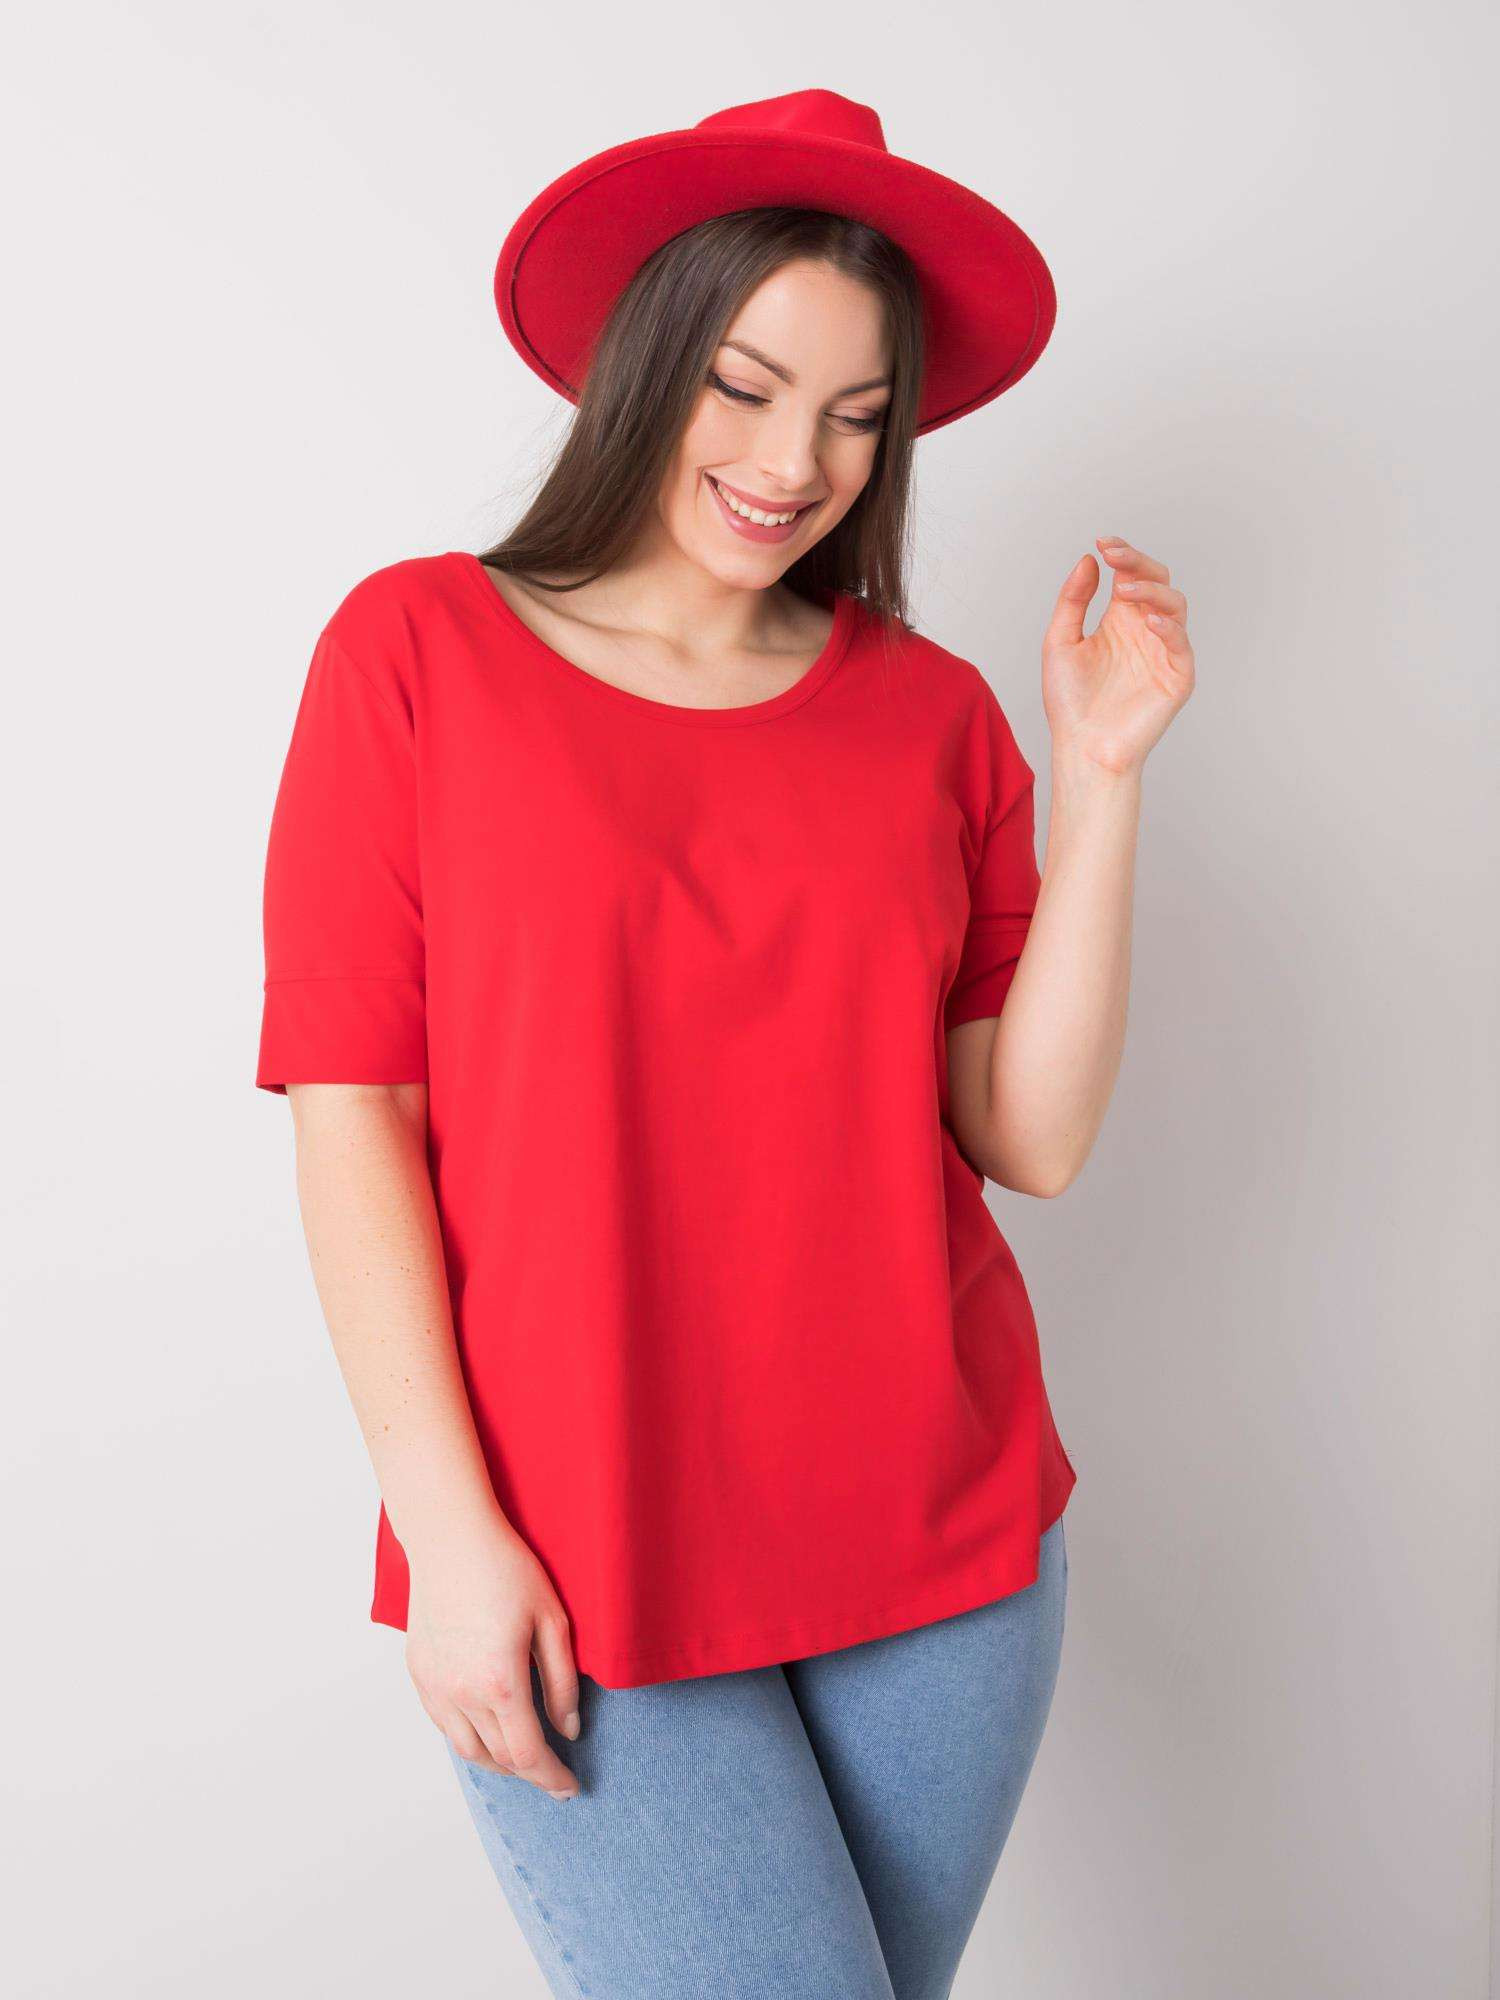 Dámské červené bavlněné tričko nadměrné velikosti XL